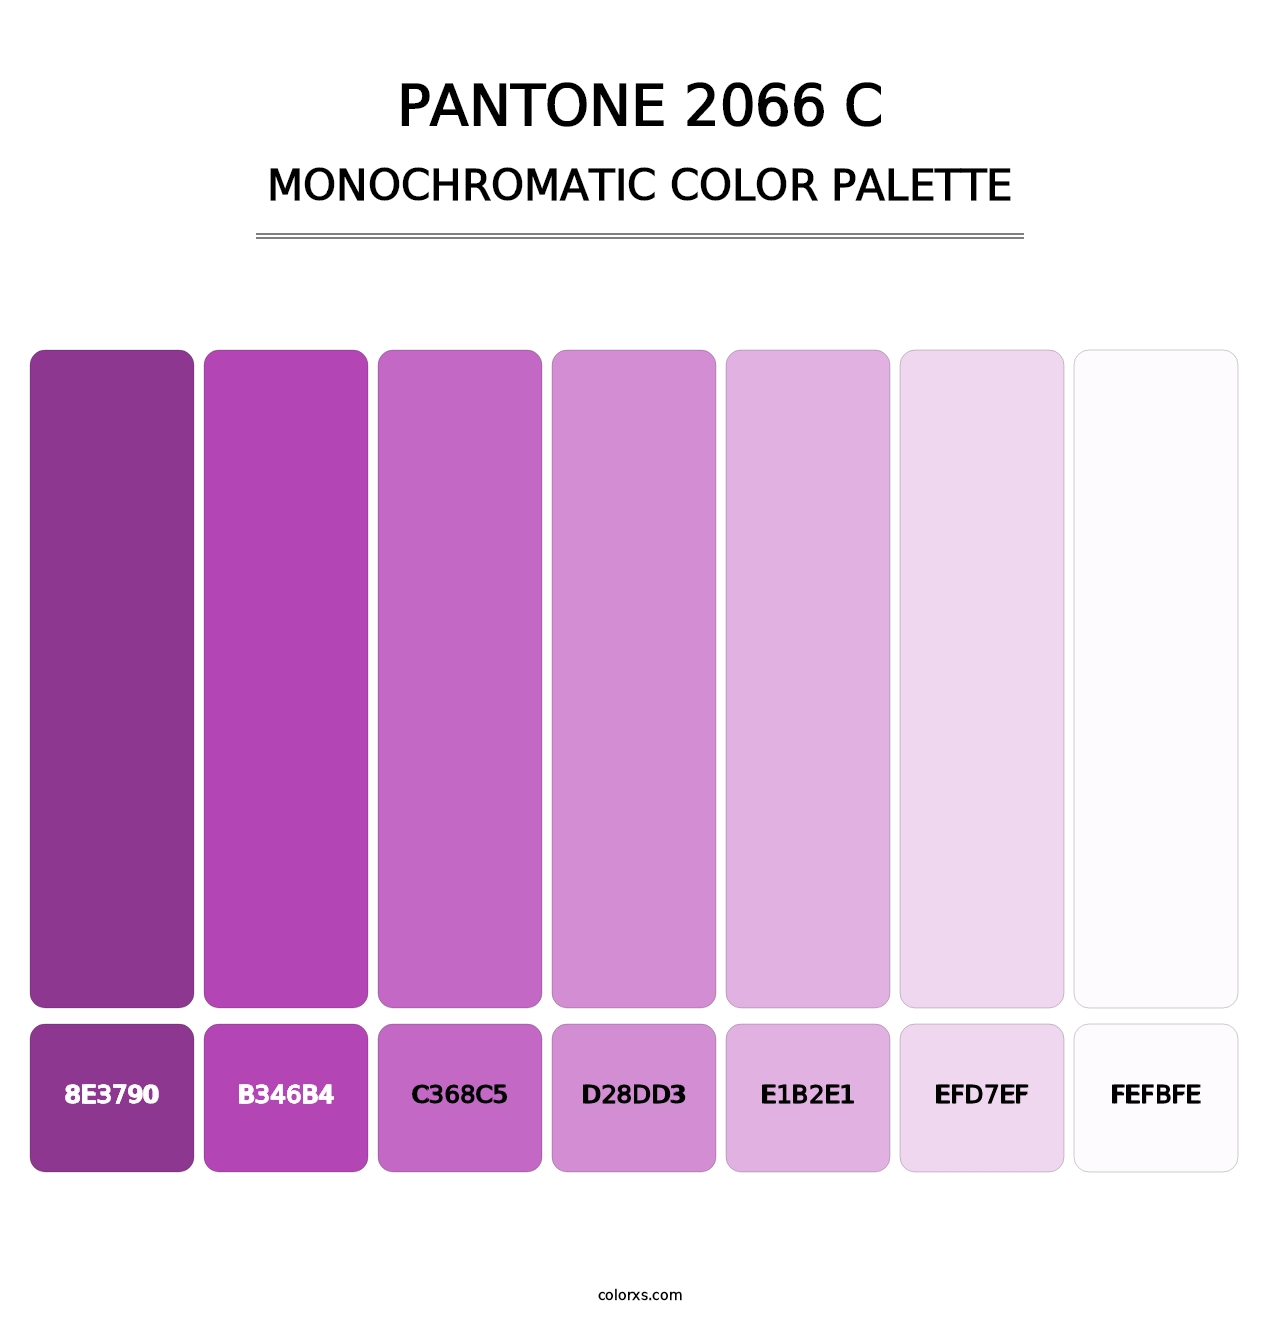 PANTONE 2066 C - Monochromatic Color Palette